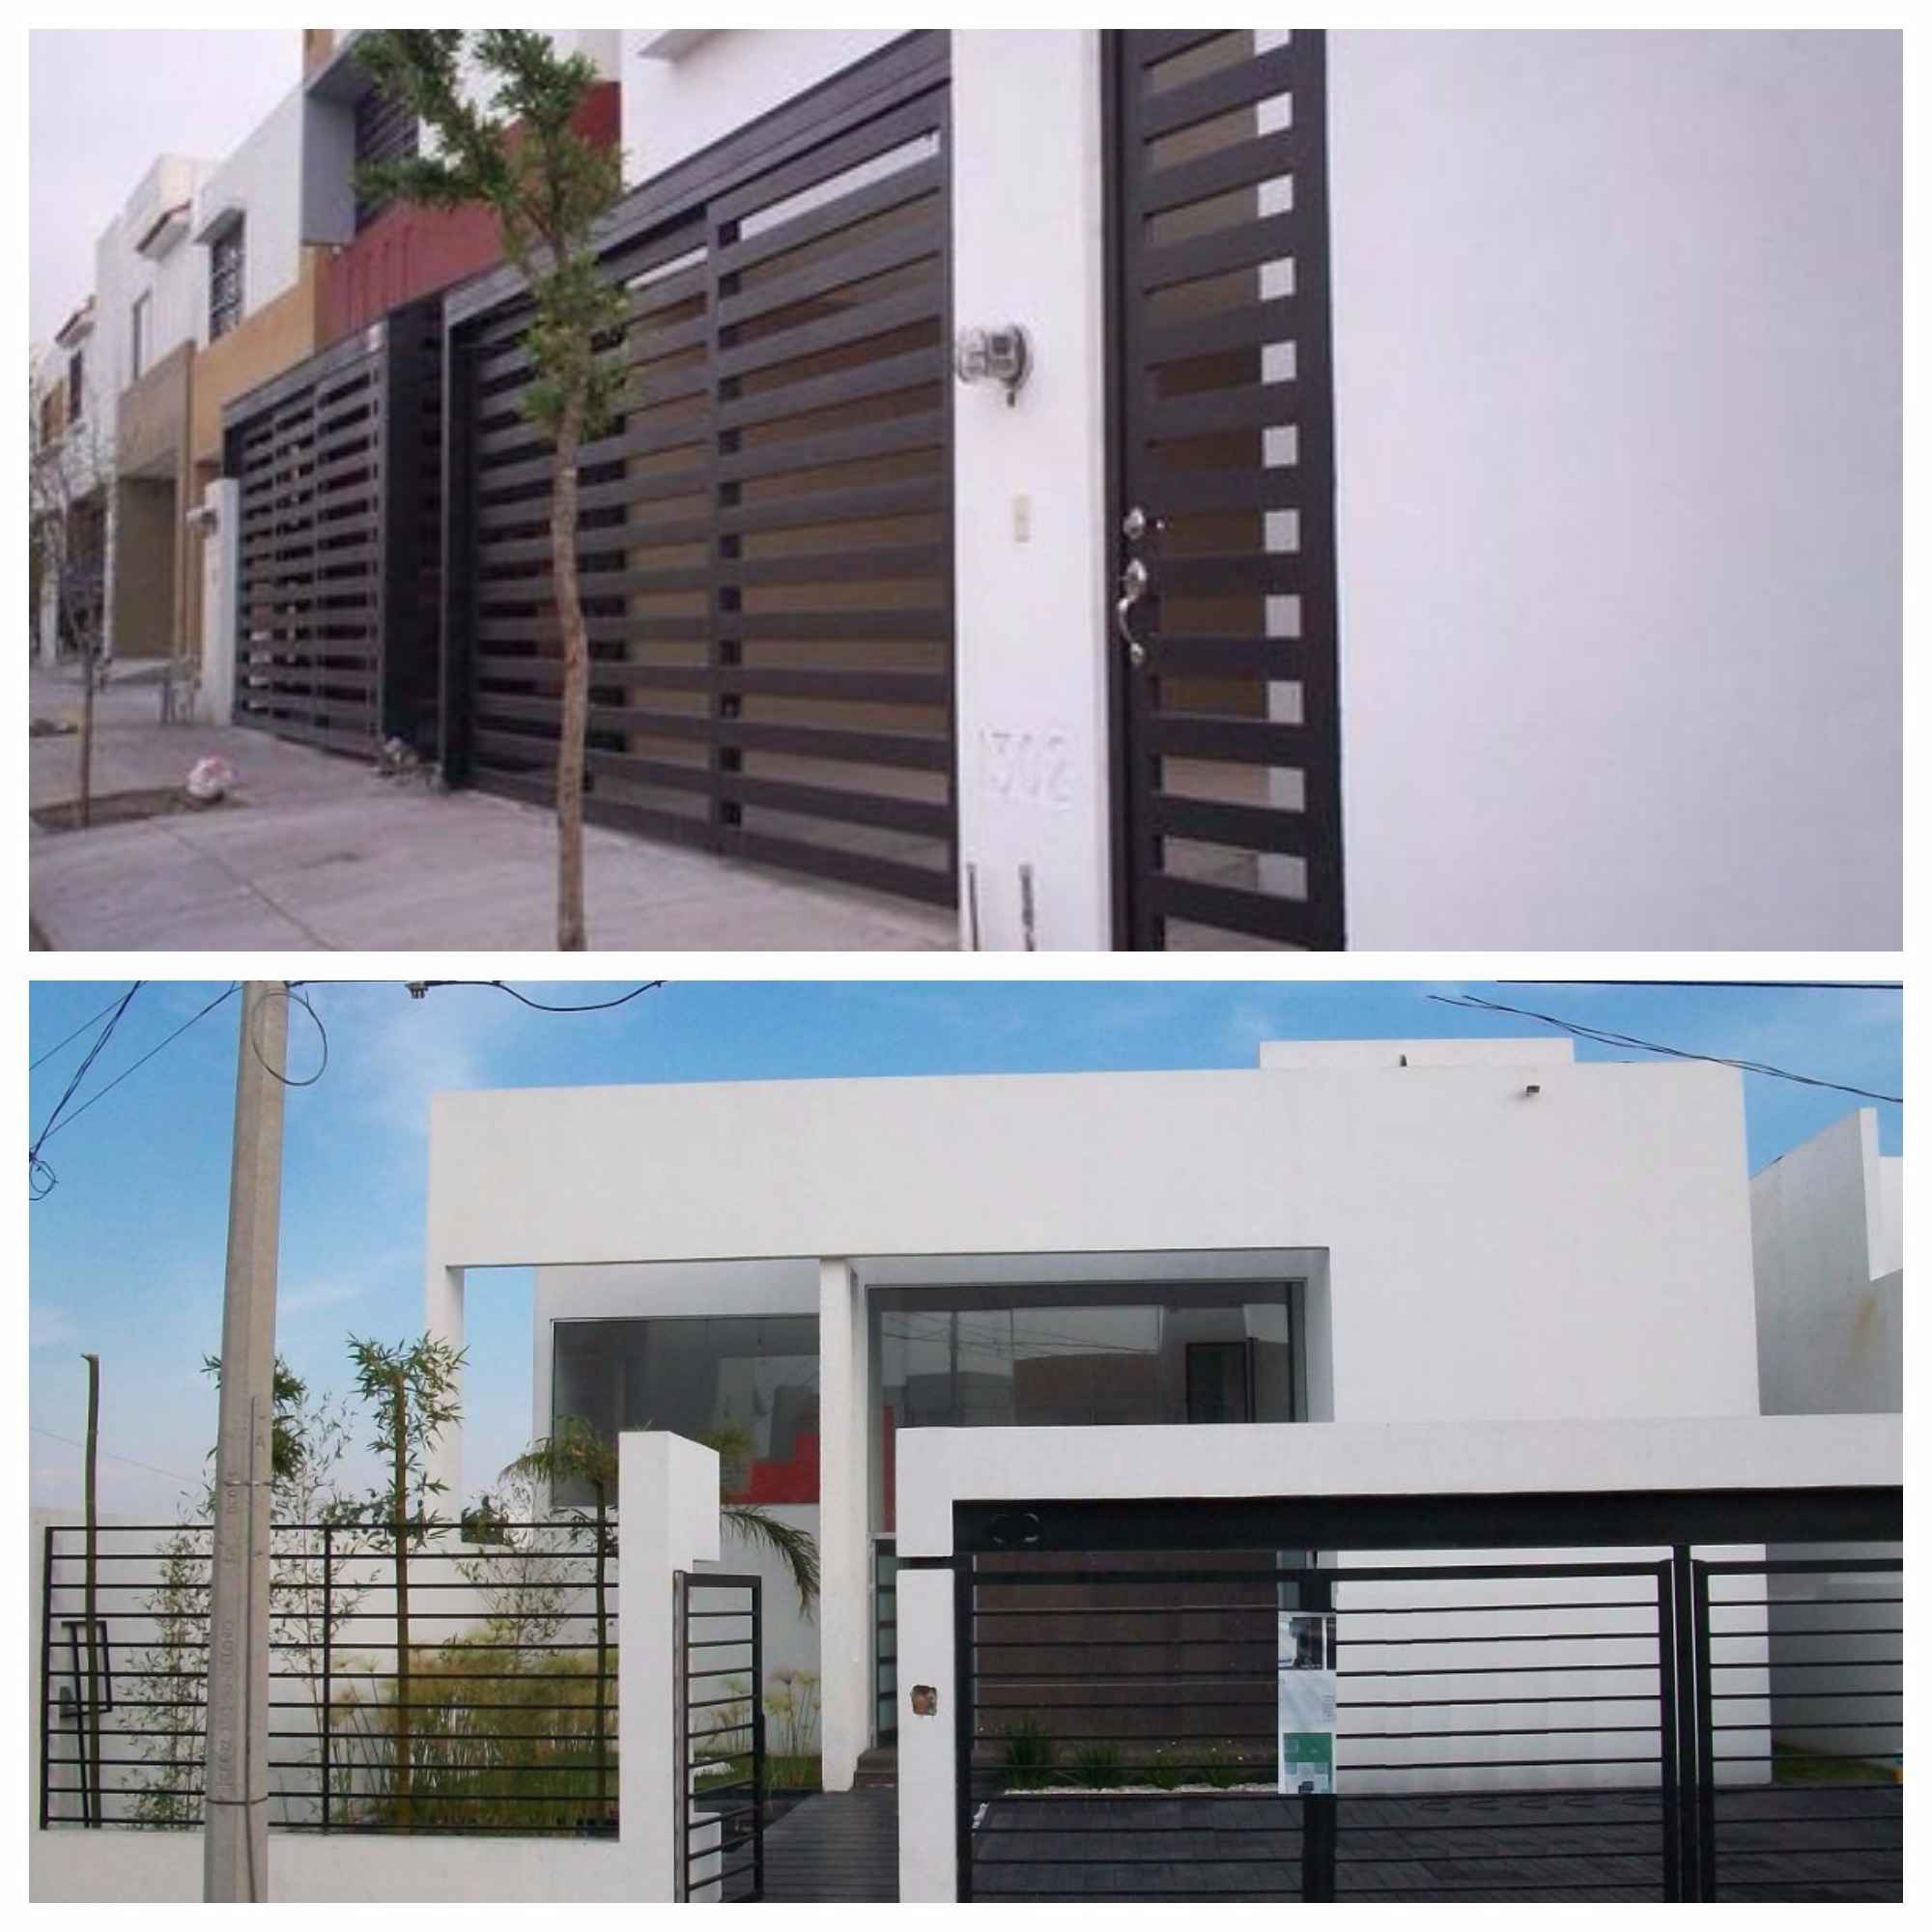 Diseños de rejas modernas para frentes de casas.